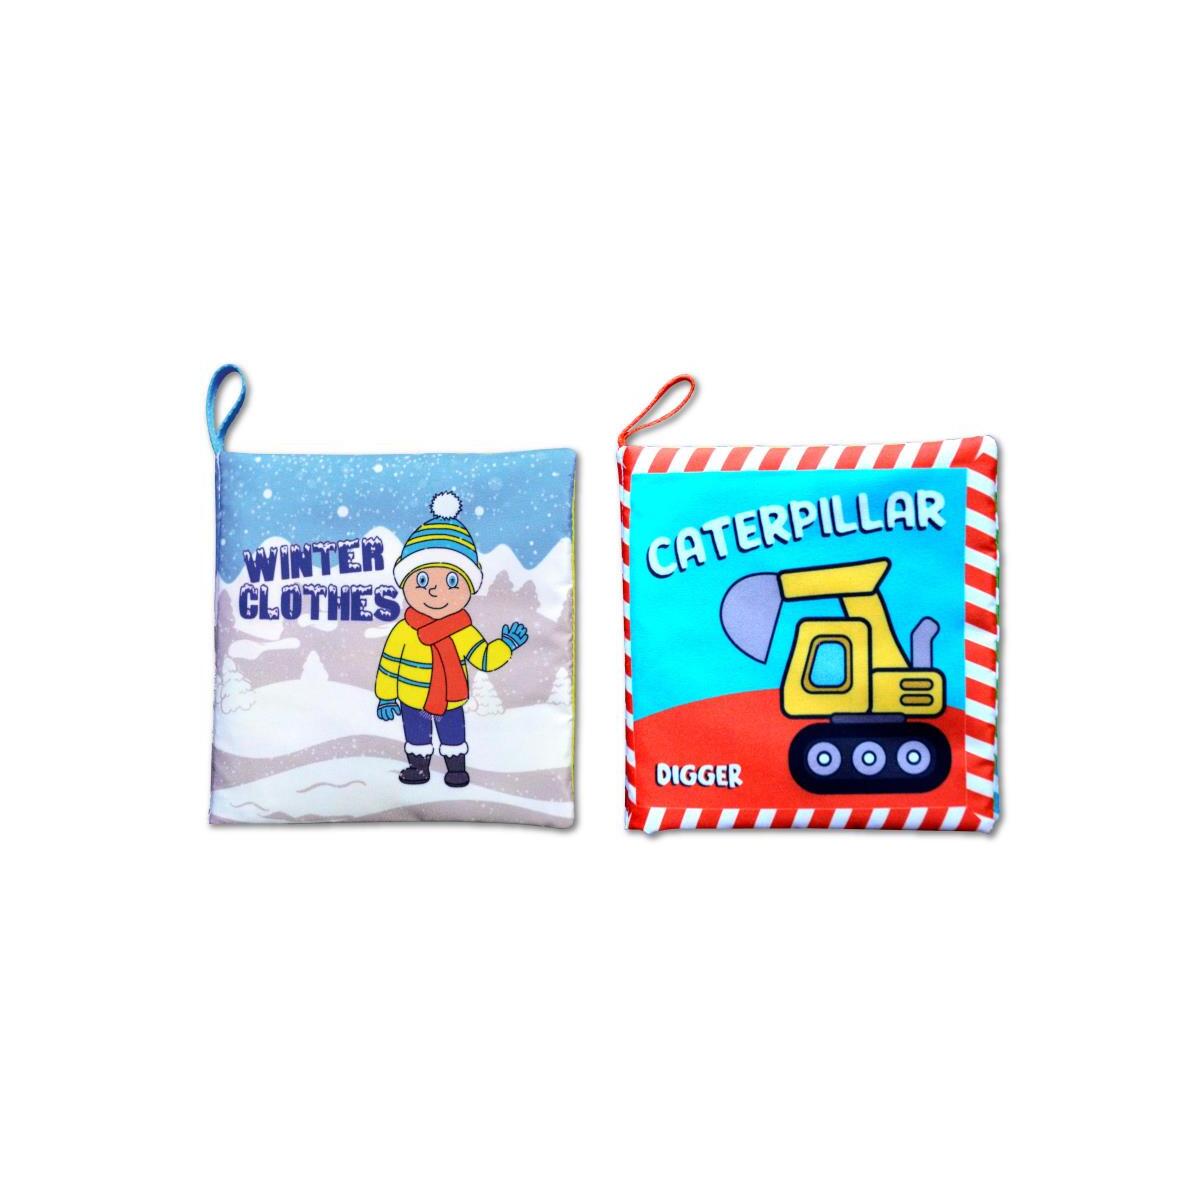 2 Kitap Tox İngilizce Kışlık Giysiler Ve İş Makinaları Kumaş Sessiz Kitap E124 E132 - Bez Kitap , Eğitici Oyuncak , Yumuşak Ve Hışırtılı